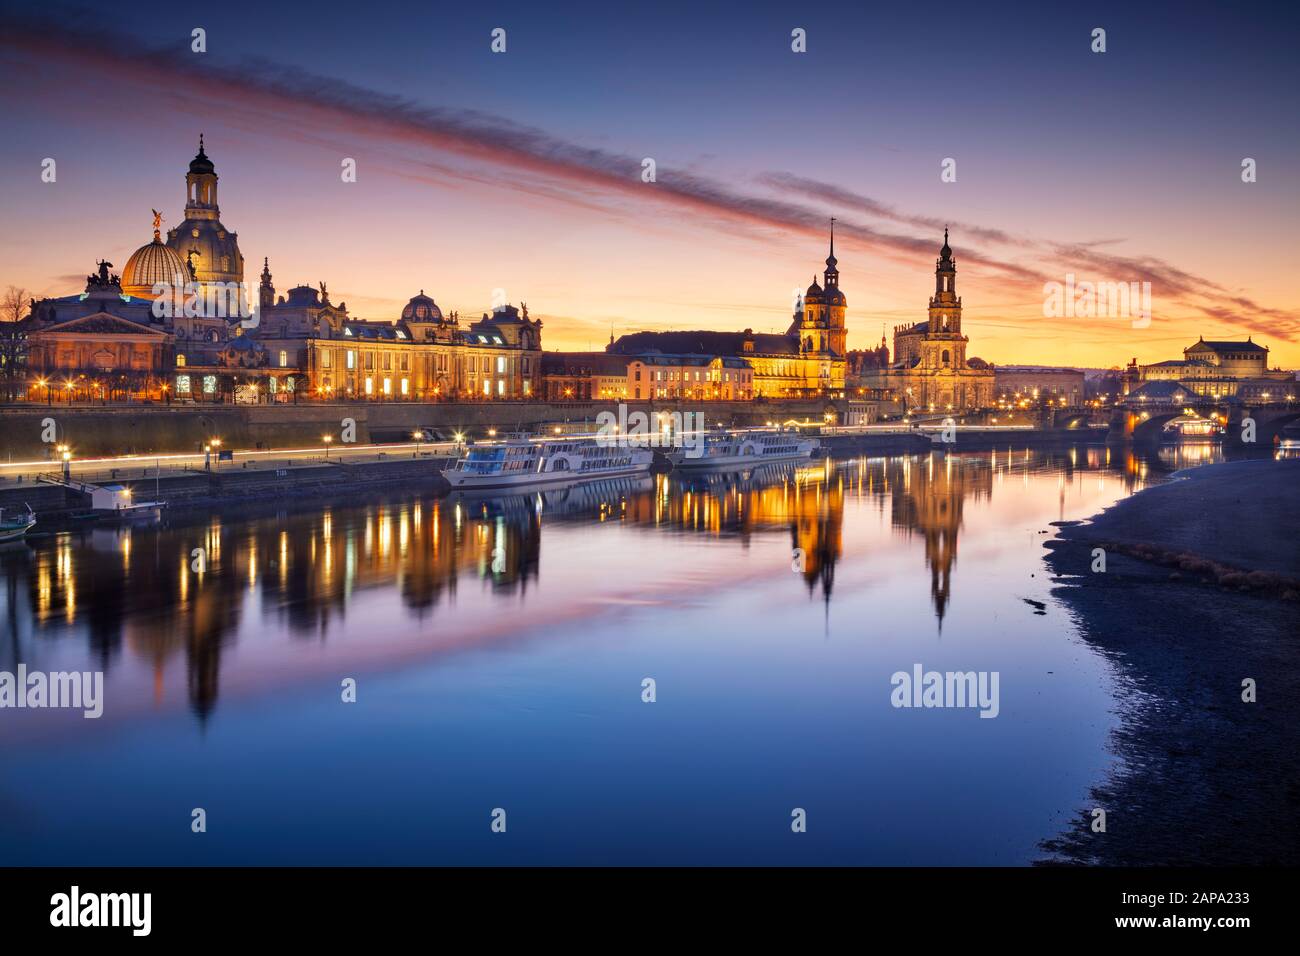 Dresde, Allemagne. Image de Dresde, Allemagne avec la Frauenkirche de Dresde et la cathédrale de Dresde au beau coucher du soleil. Banque D'Images